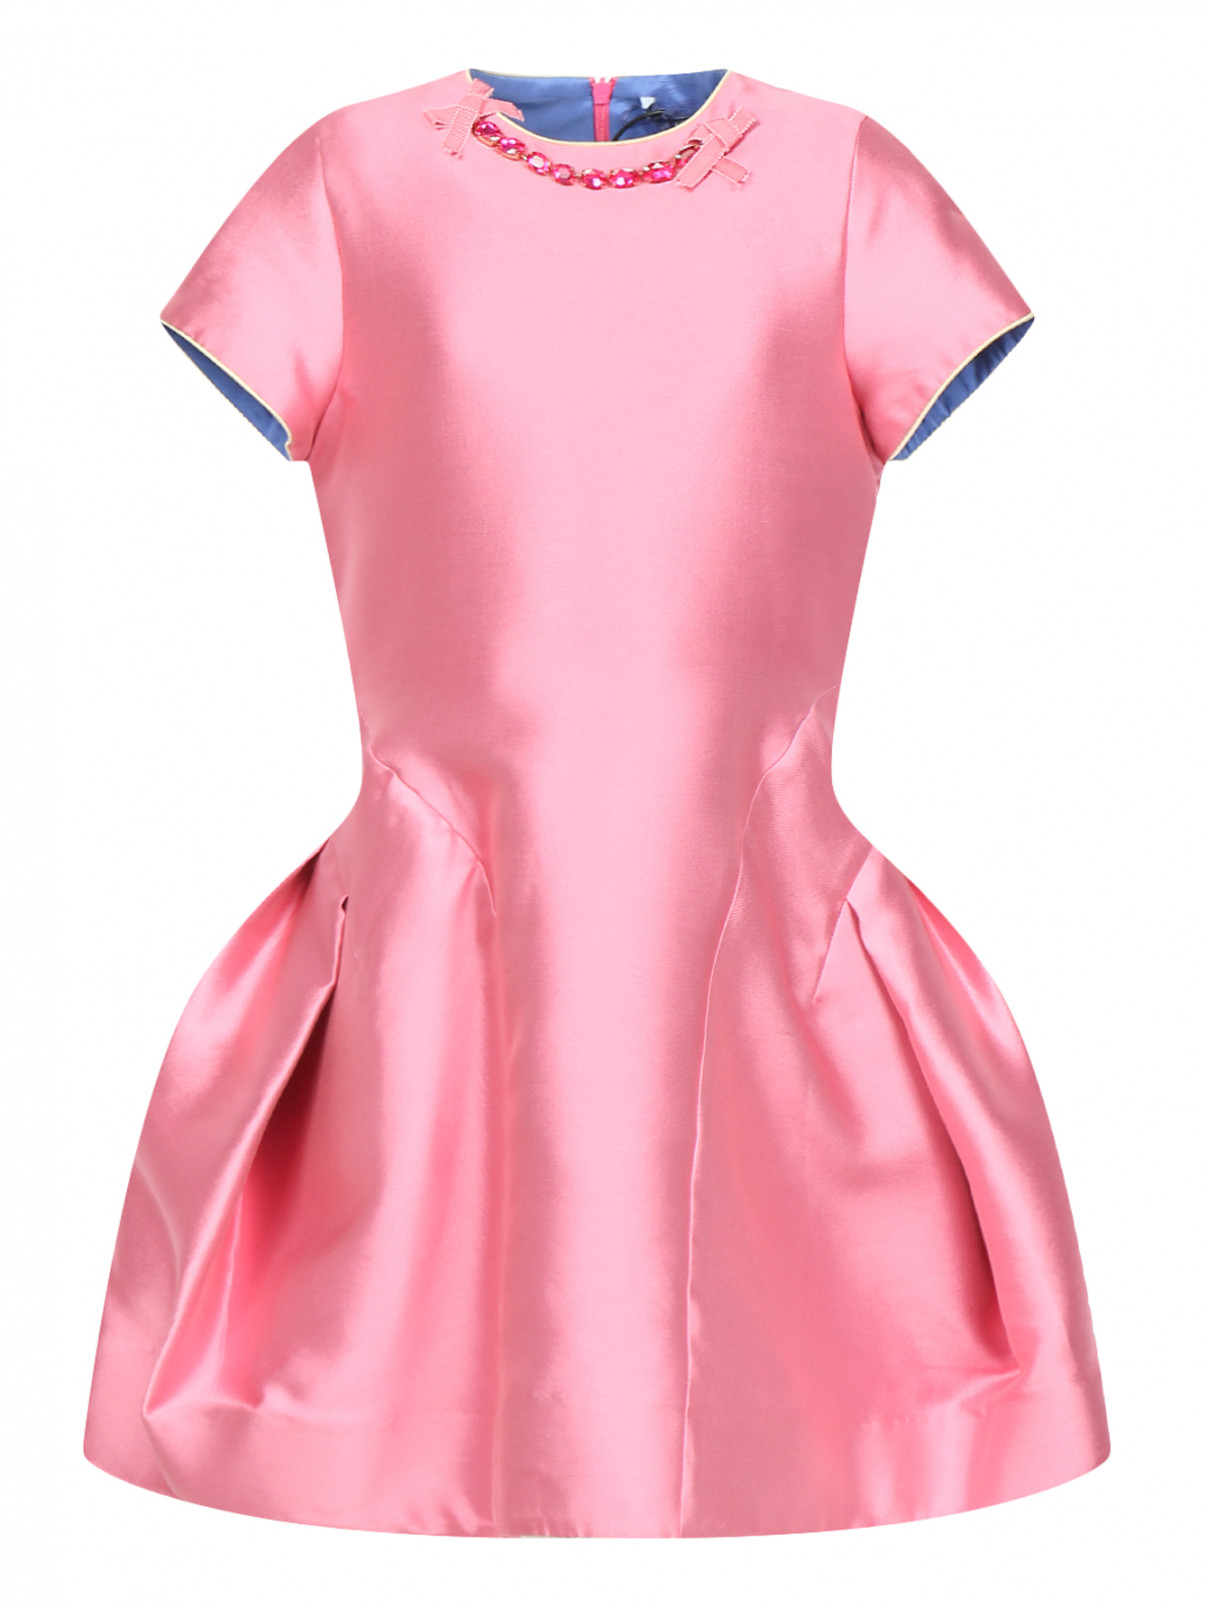 Платье декорированное камнями MiMiSol  –  Общий вид  – Цвет:  Розовый